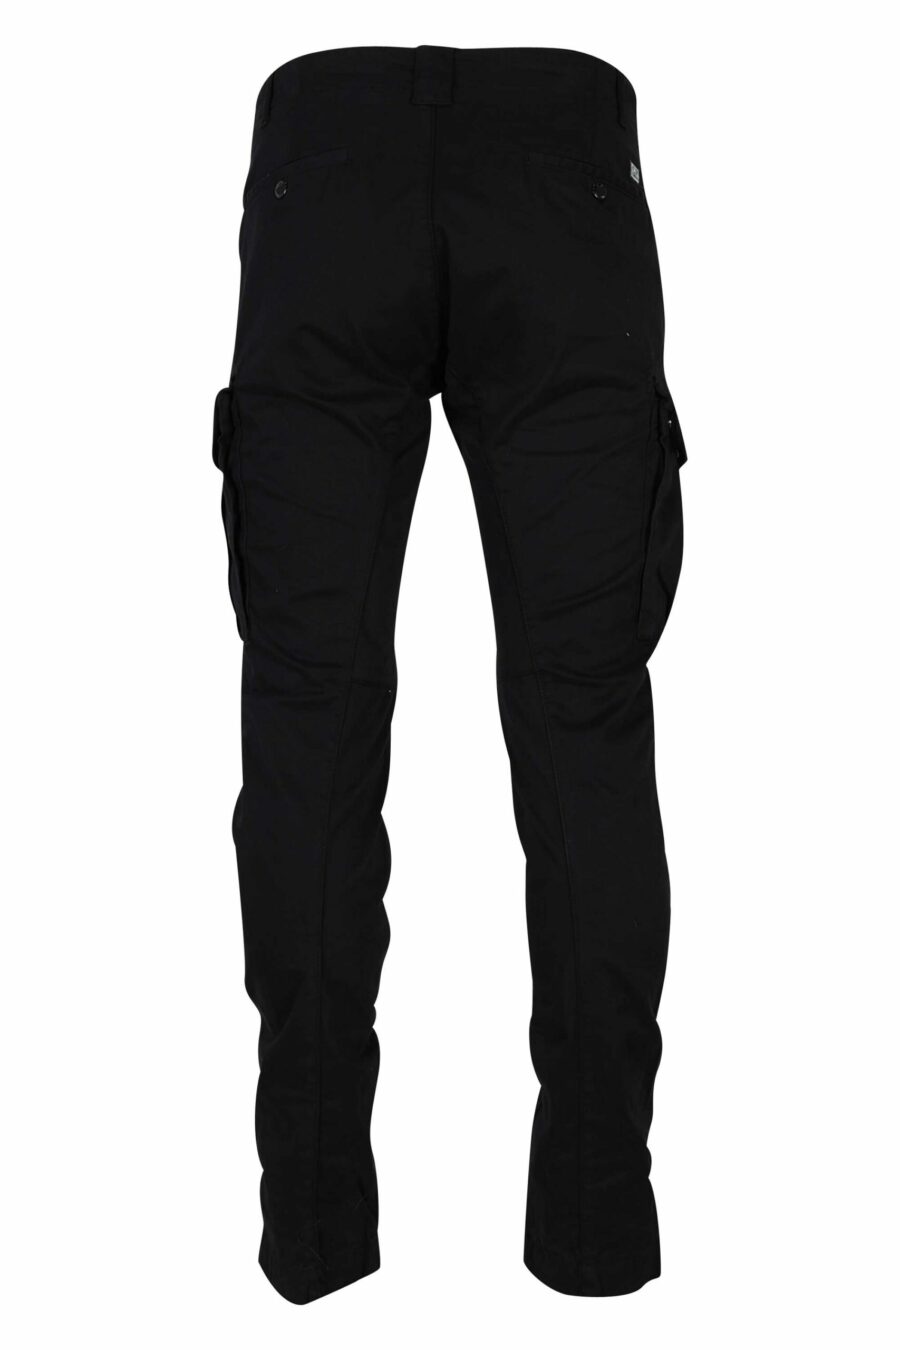 Pantalón negro estilo cargo de satén elástico y logo lente - 7620943597585 2 1 scaled